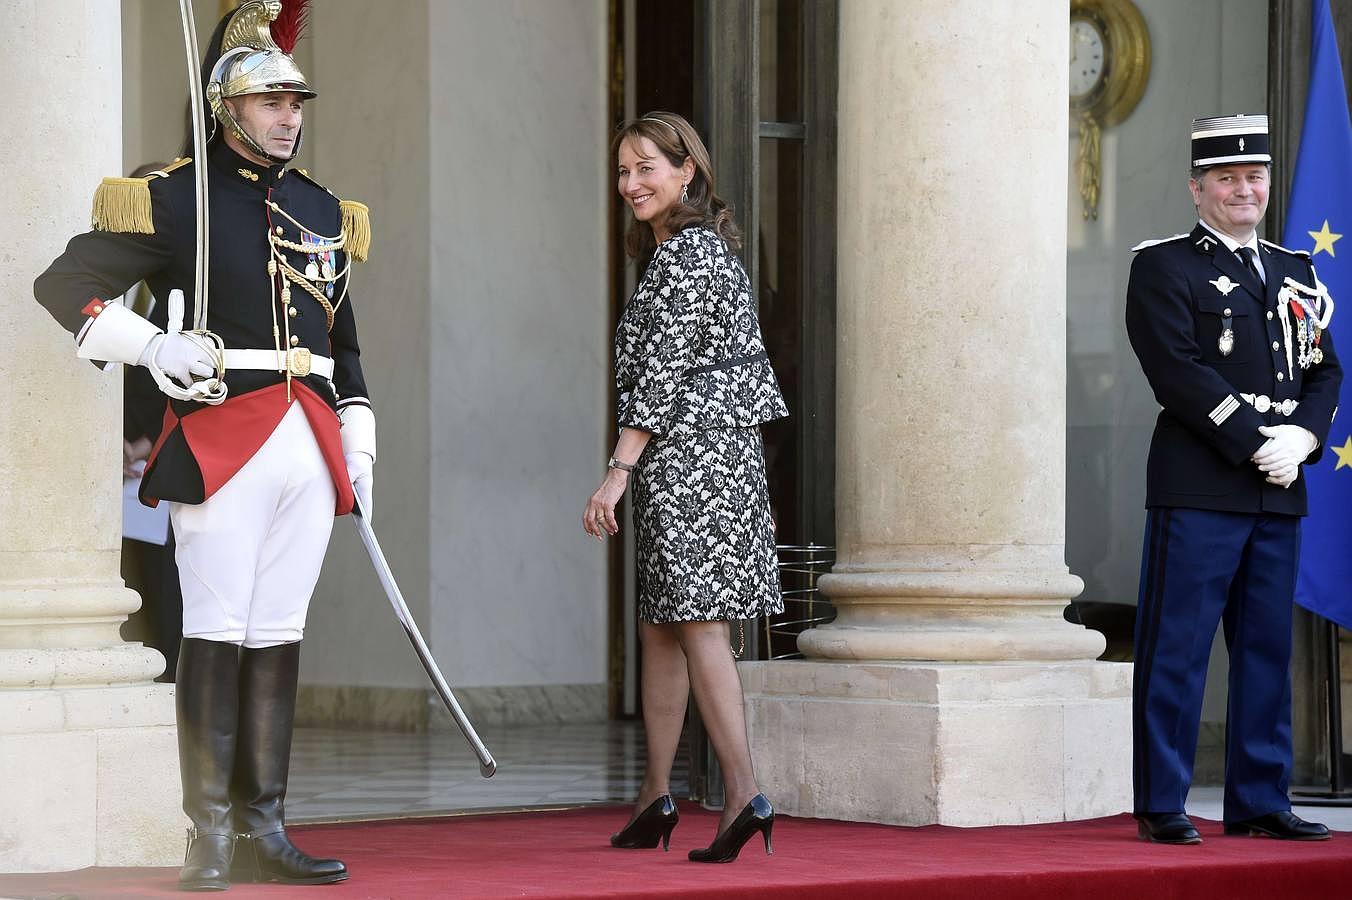 Segolene Royal, ministra francesa de ecología y desarrollo sostenible, acudió a la cita con un traje estampado